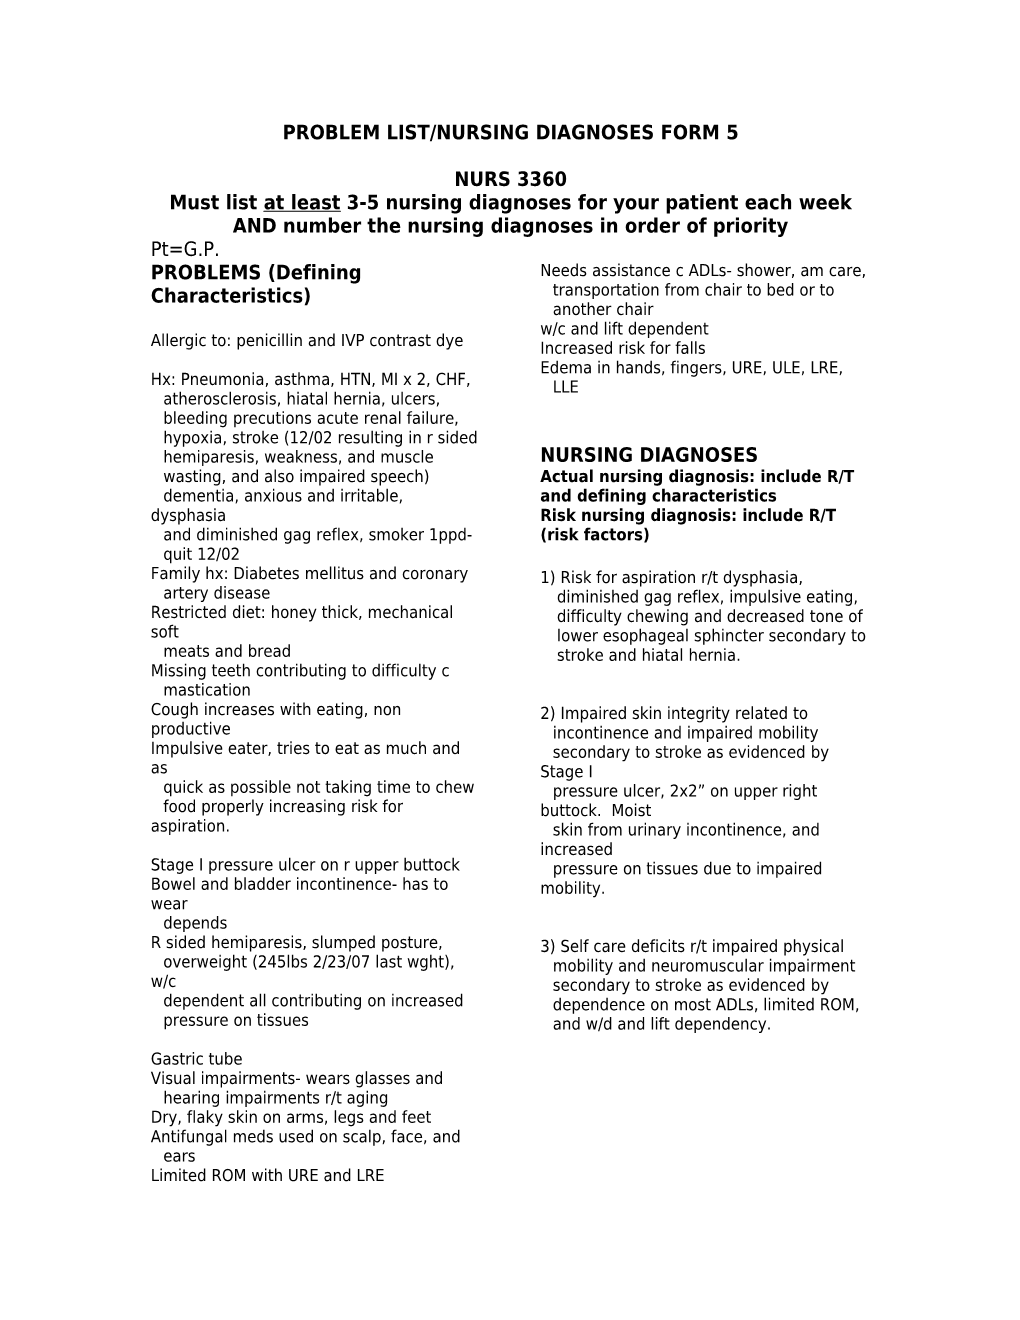 Problem List/Nursing Diagnoses Form 5